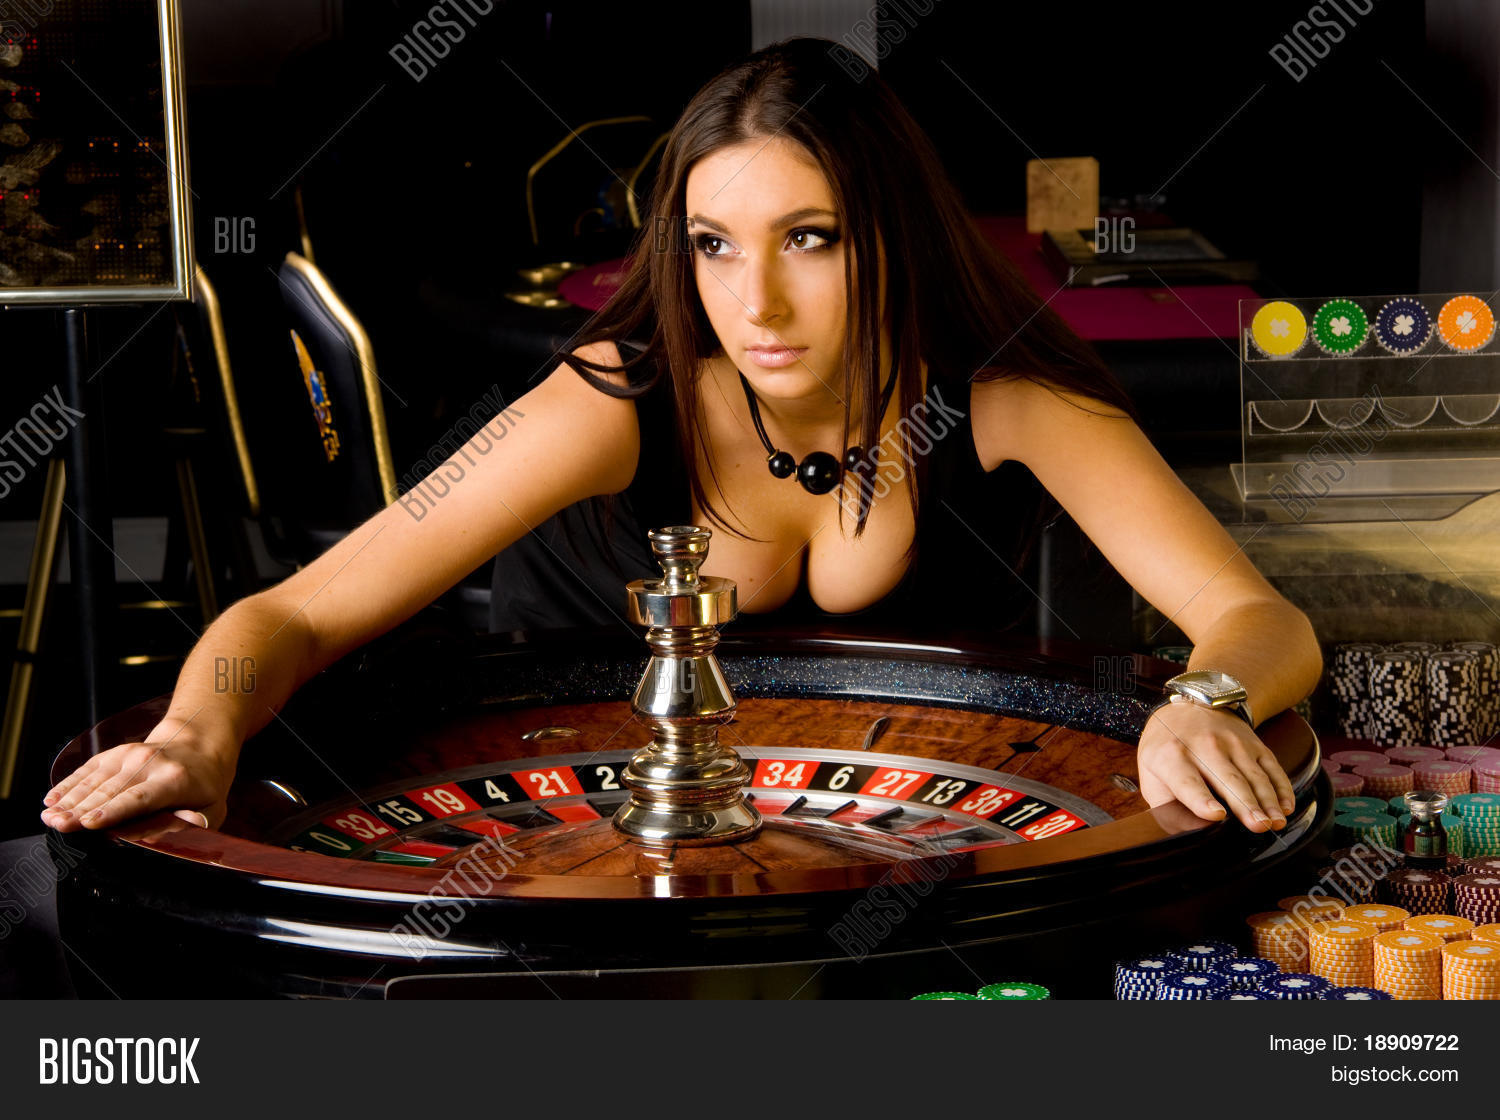 casino-p0005.jpg